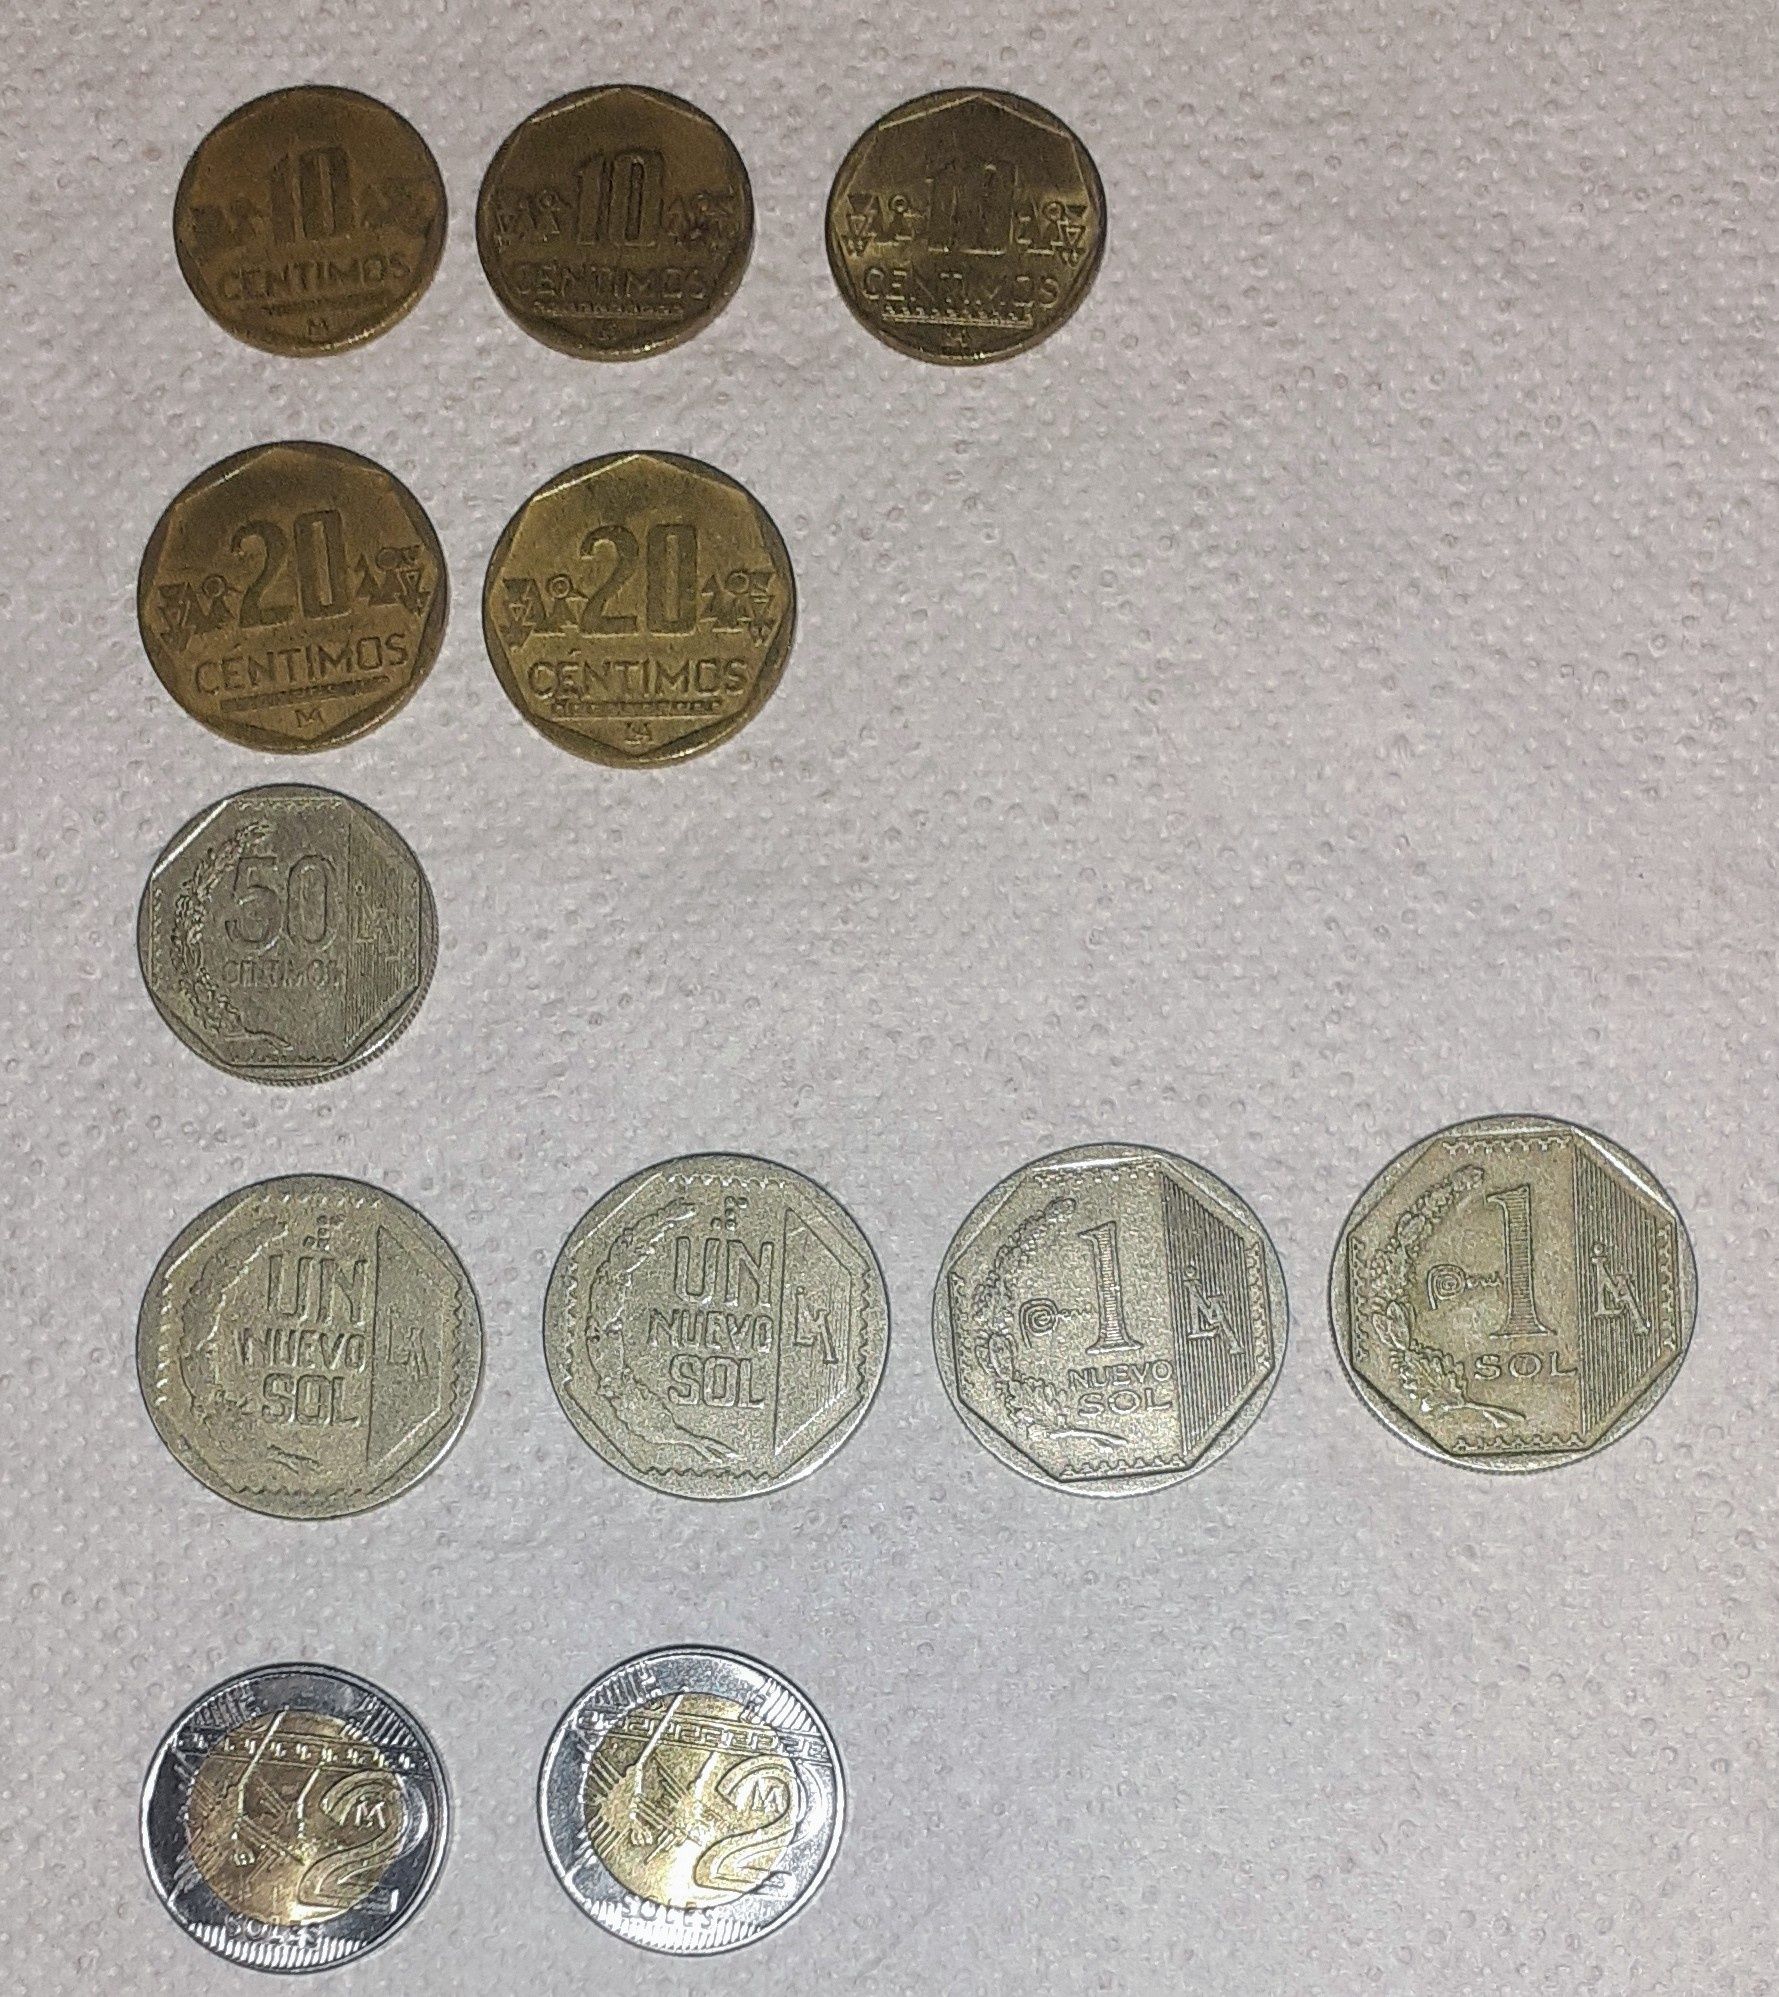 Monede și bancnote vechi